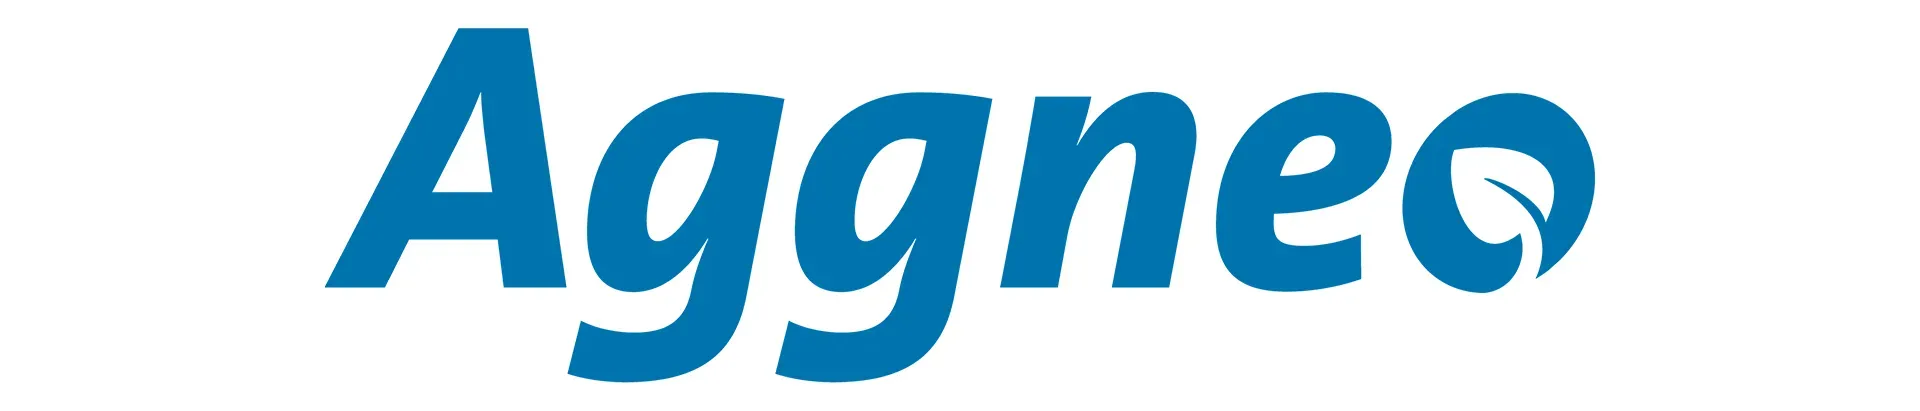 Aggneo logo